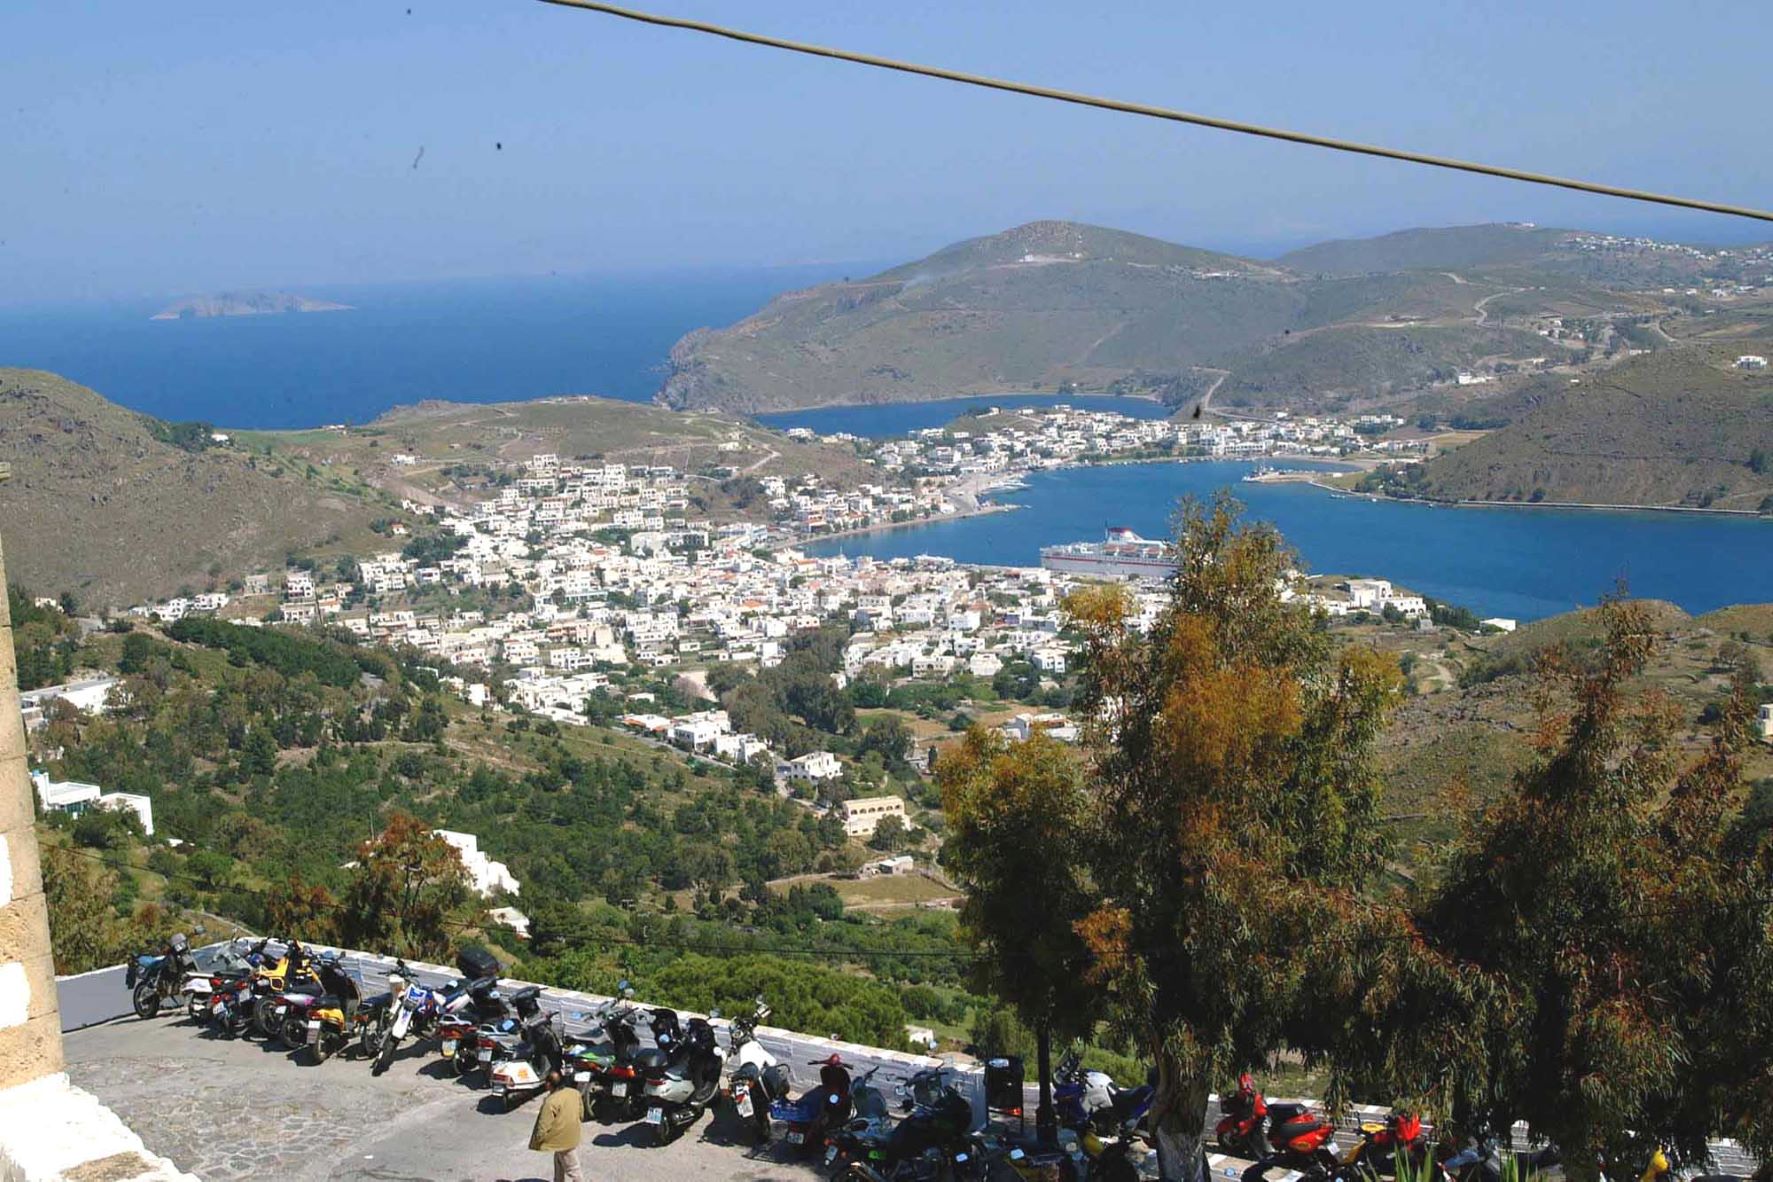 Πάτμος: Κορυφαίο ελληνικό νησί για τη μυστηριακή του ατμόσφαιρα σύμφωνα το Conde Nast Traveller